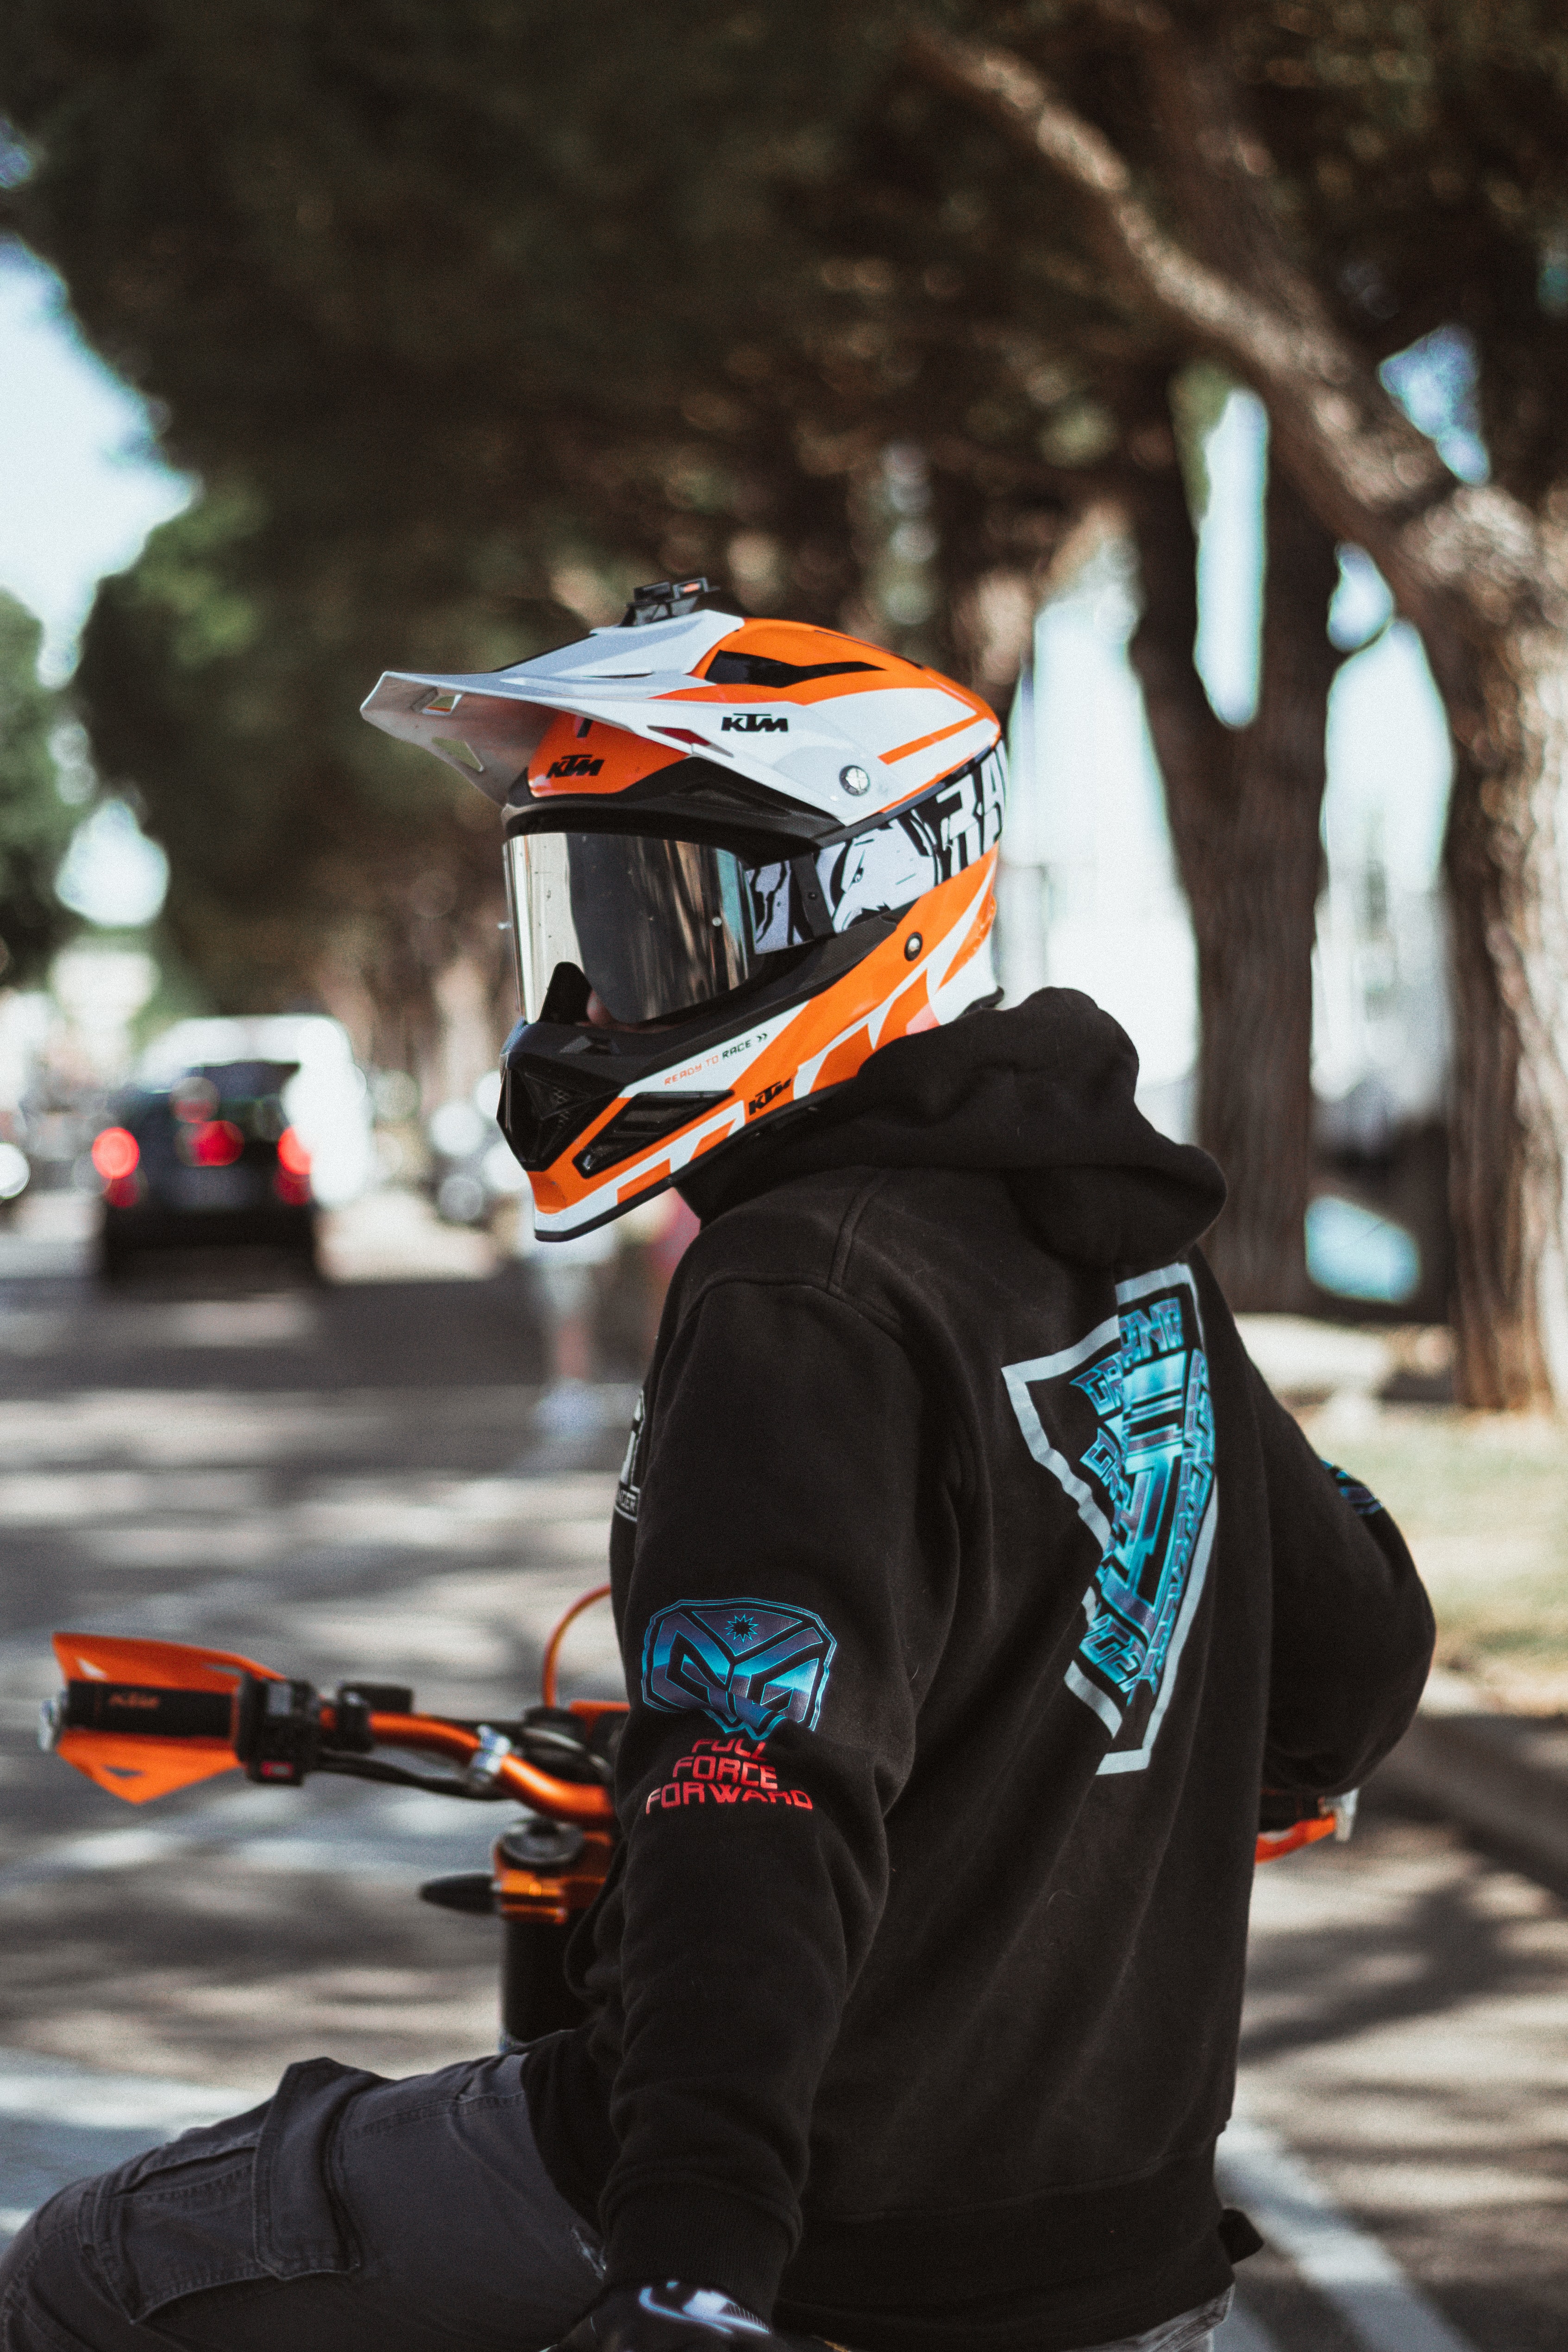 motorcyclist, hoodies, helmet, minimalism, motorcycle, hoodie, equipment, outfit